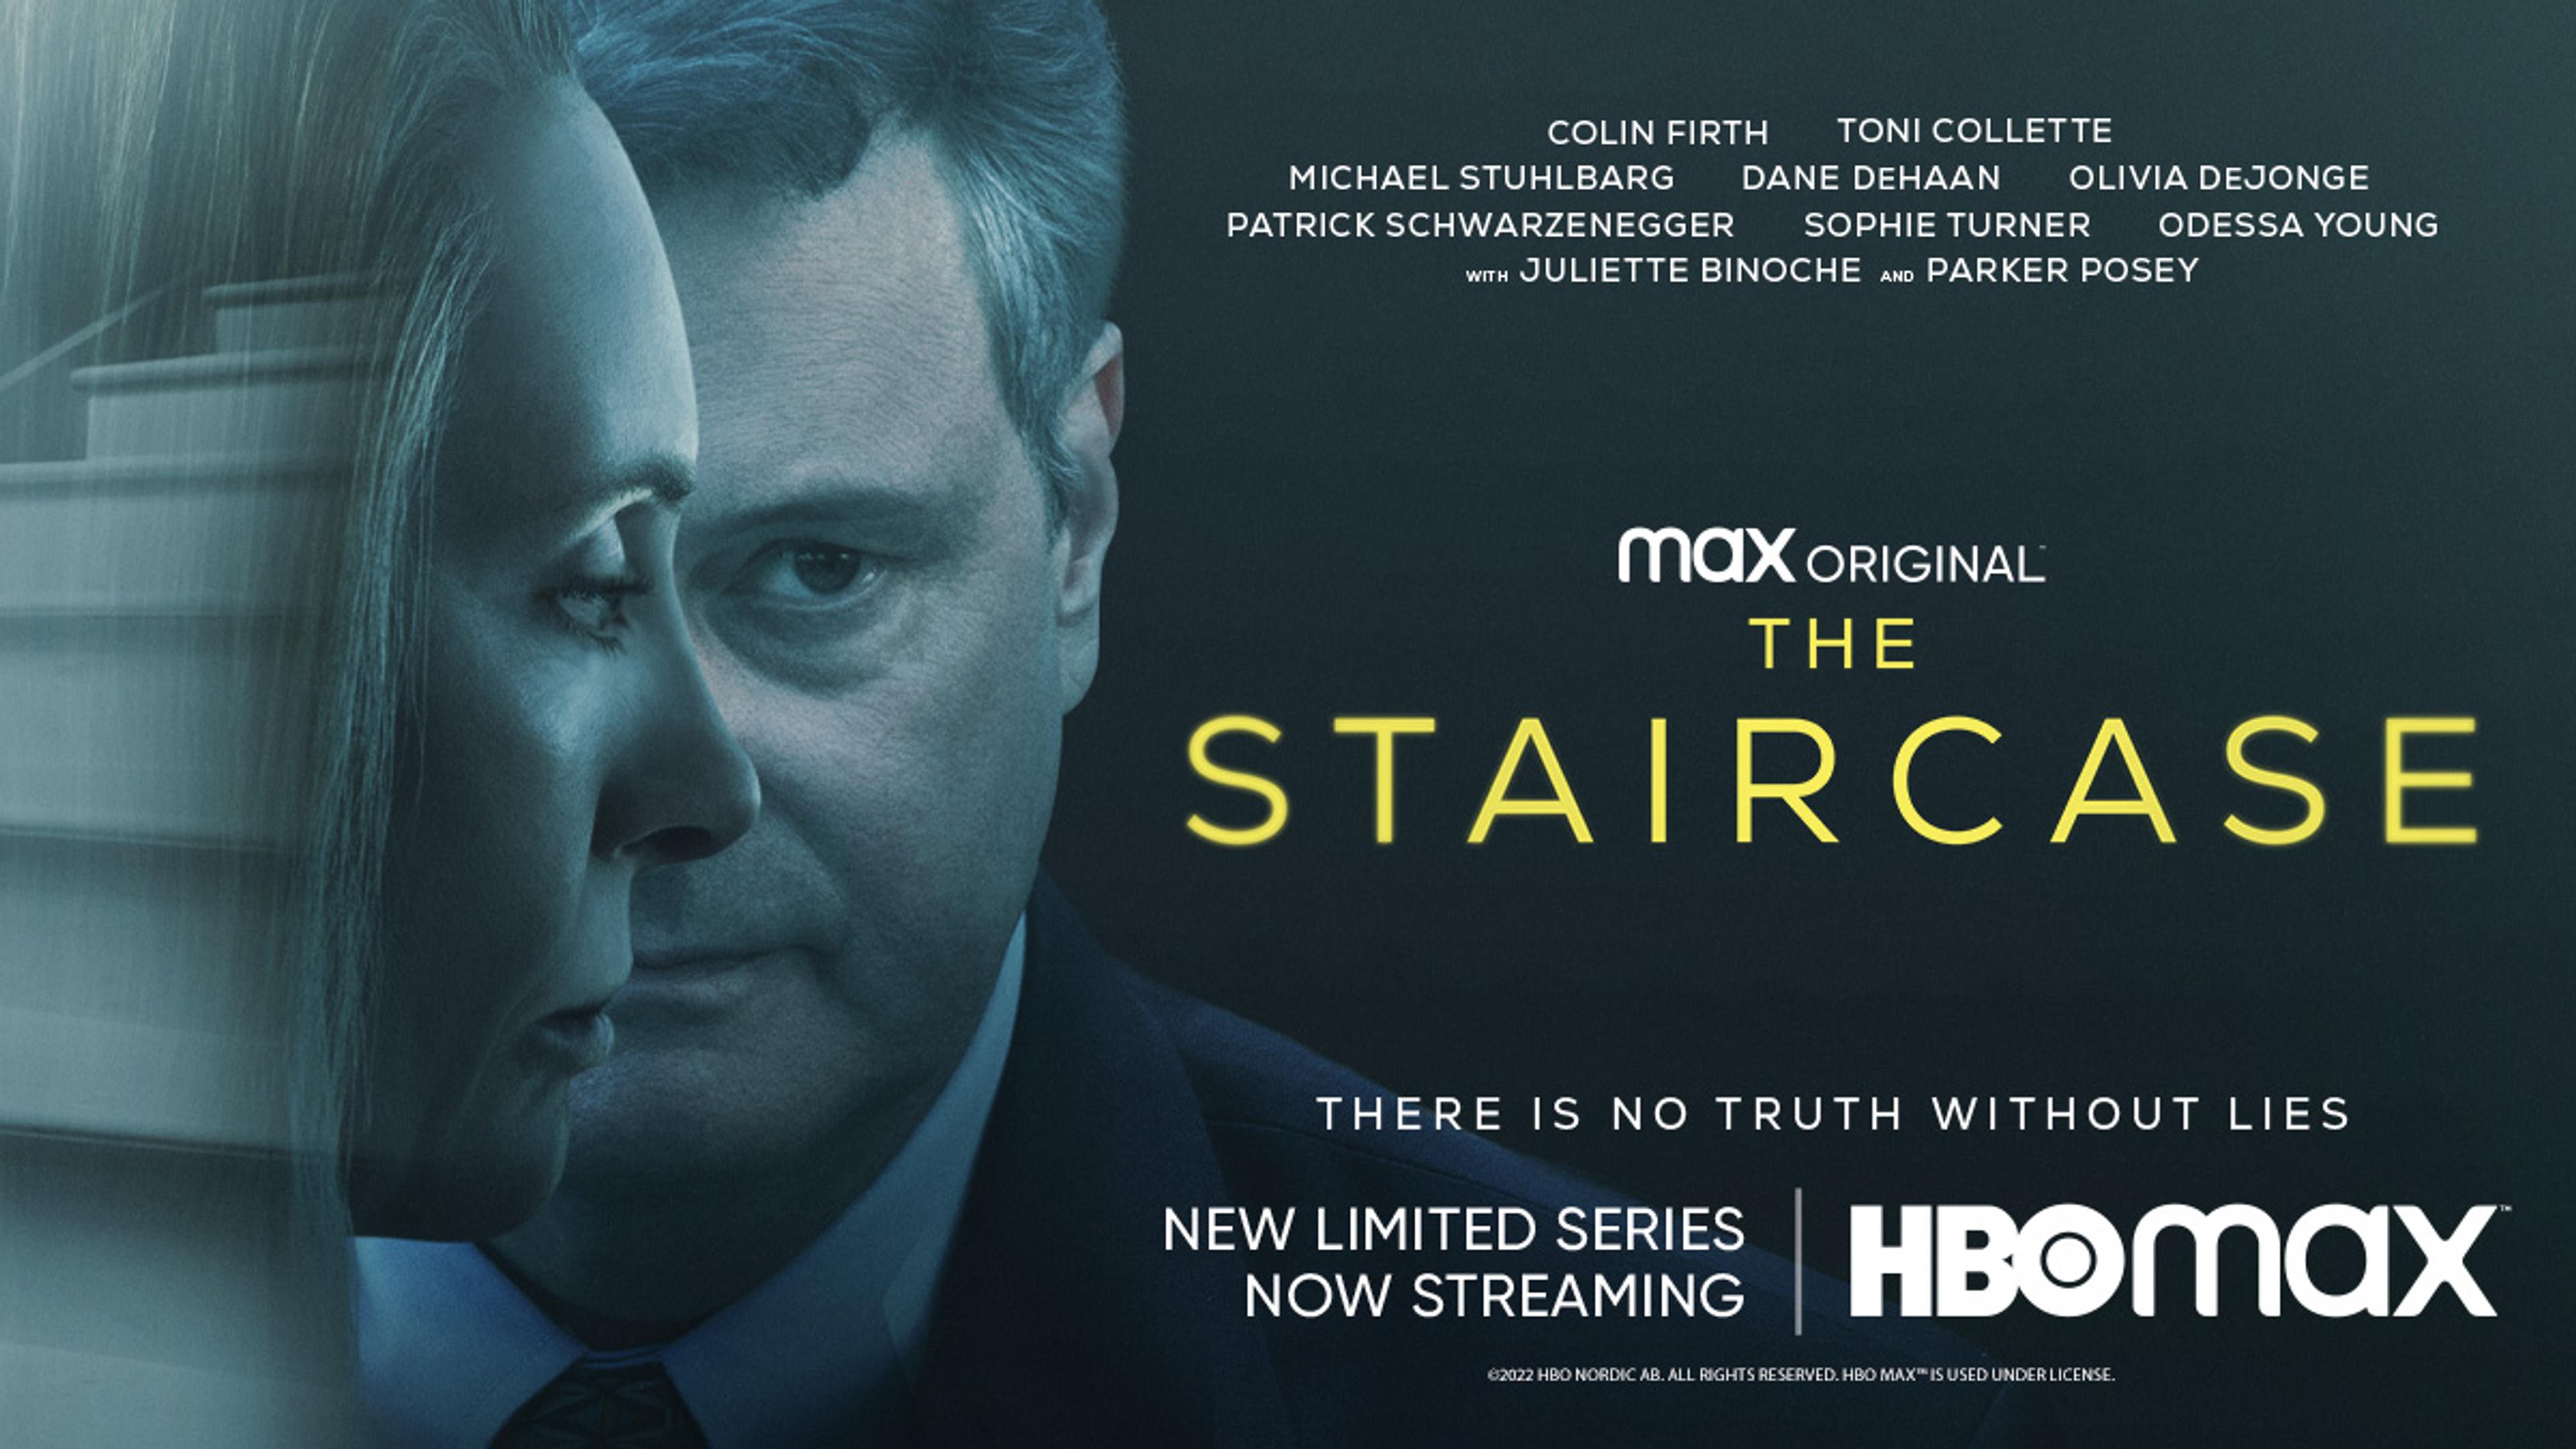 The Staircase på HBO Max via Strim. Portrett av Colin Firth og Toni Collette med gjenskinnet av en trapp i Toni´s hår.